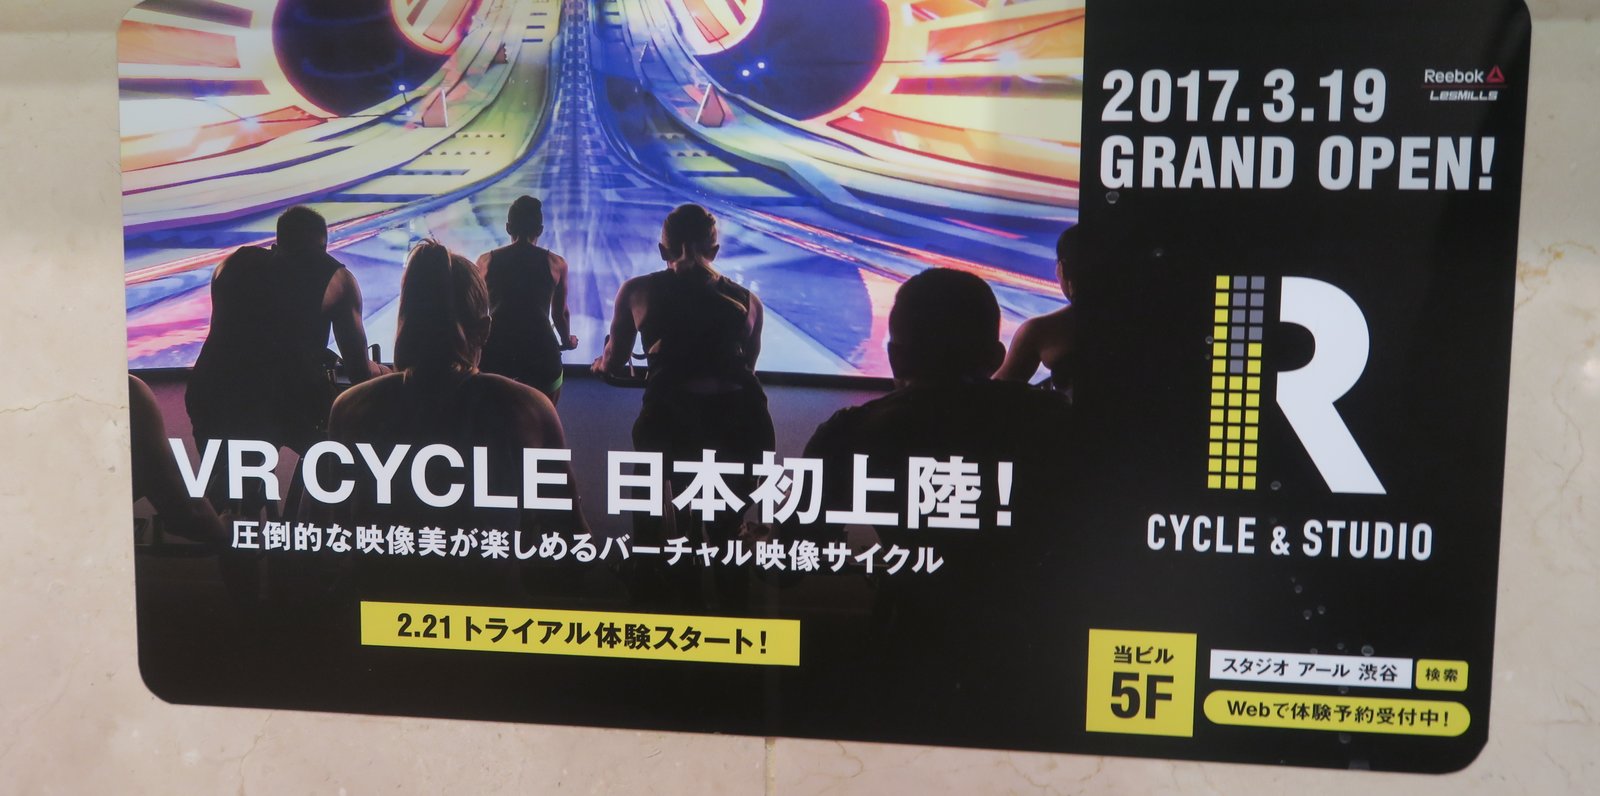 CYCLE & STUDIO R Shibuya